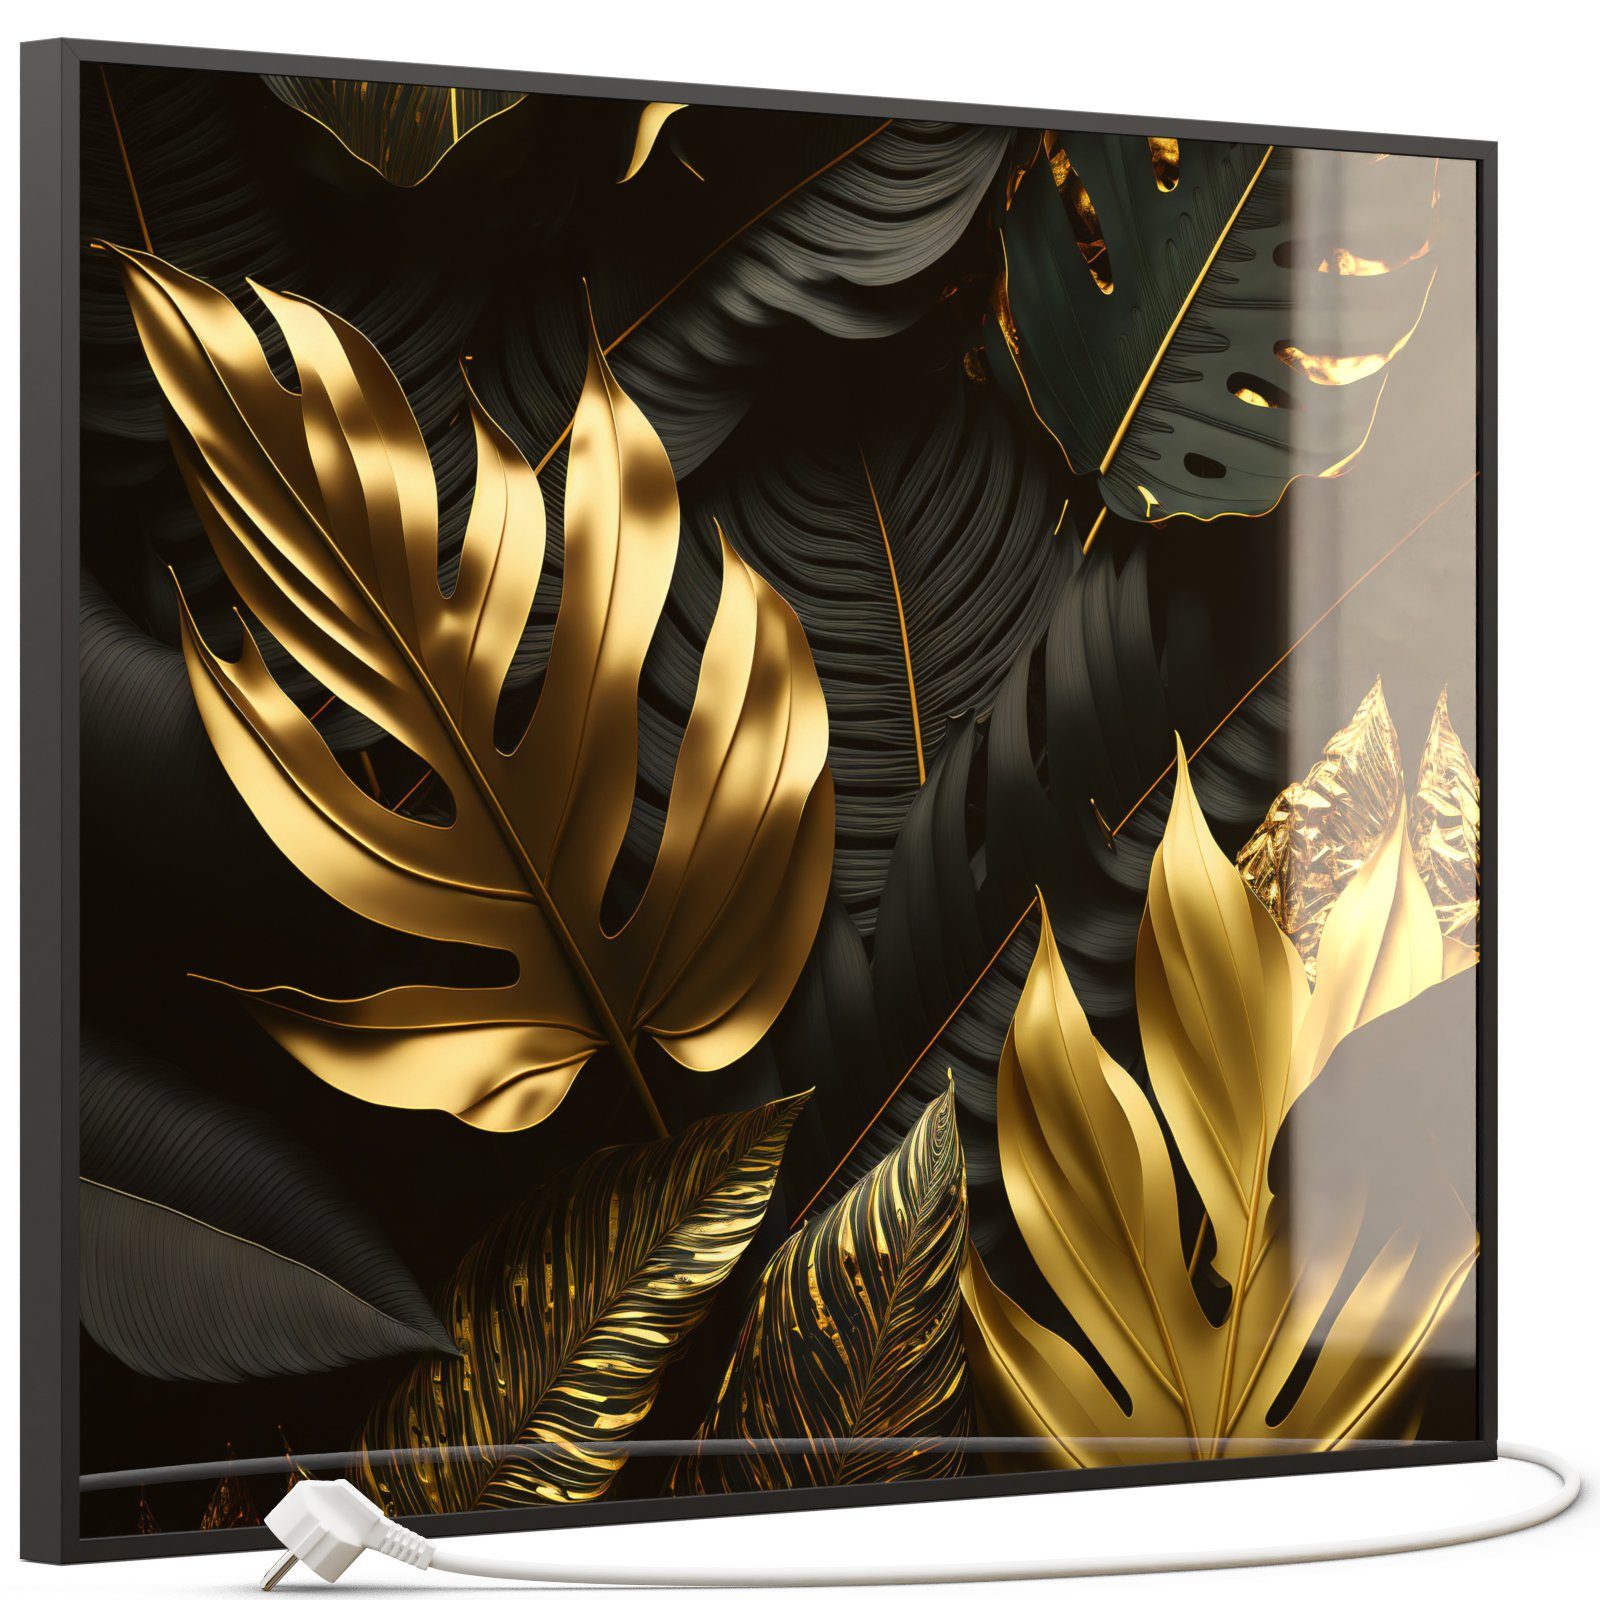 STEINFELD Heizsysteme Infrarotheizung, Glas Bild 350W-1200W, Inklusive Thermostat, 070 Goldenen Blättern Schwarz